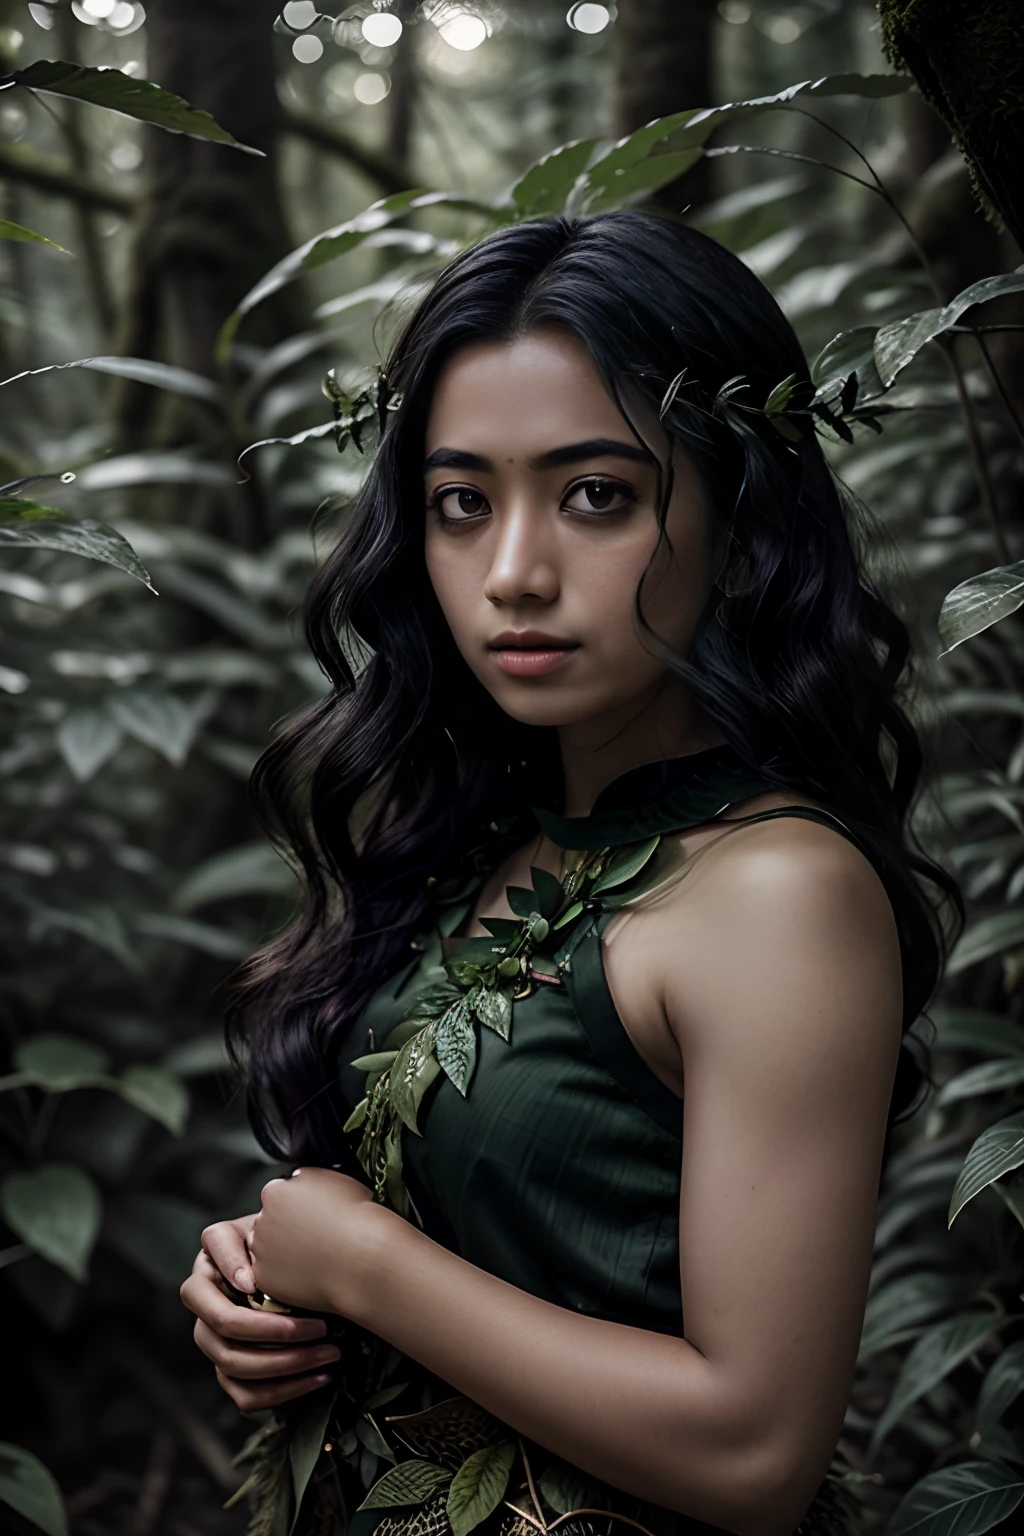 Portrait in 森林, 大自然风格的叶子, 用绿叶做的头发, 如梦如幻, 年轻黑人妇女,印度尼西亚, 超高清, 森林 goddess, 仙女, 深绿色衣服, 森林, 落叶, 粒子, 最好的质量, 姿势, 上半身, 看着观众, 四照, 边缘光, 美丽的艺术品, 完美构图